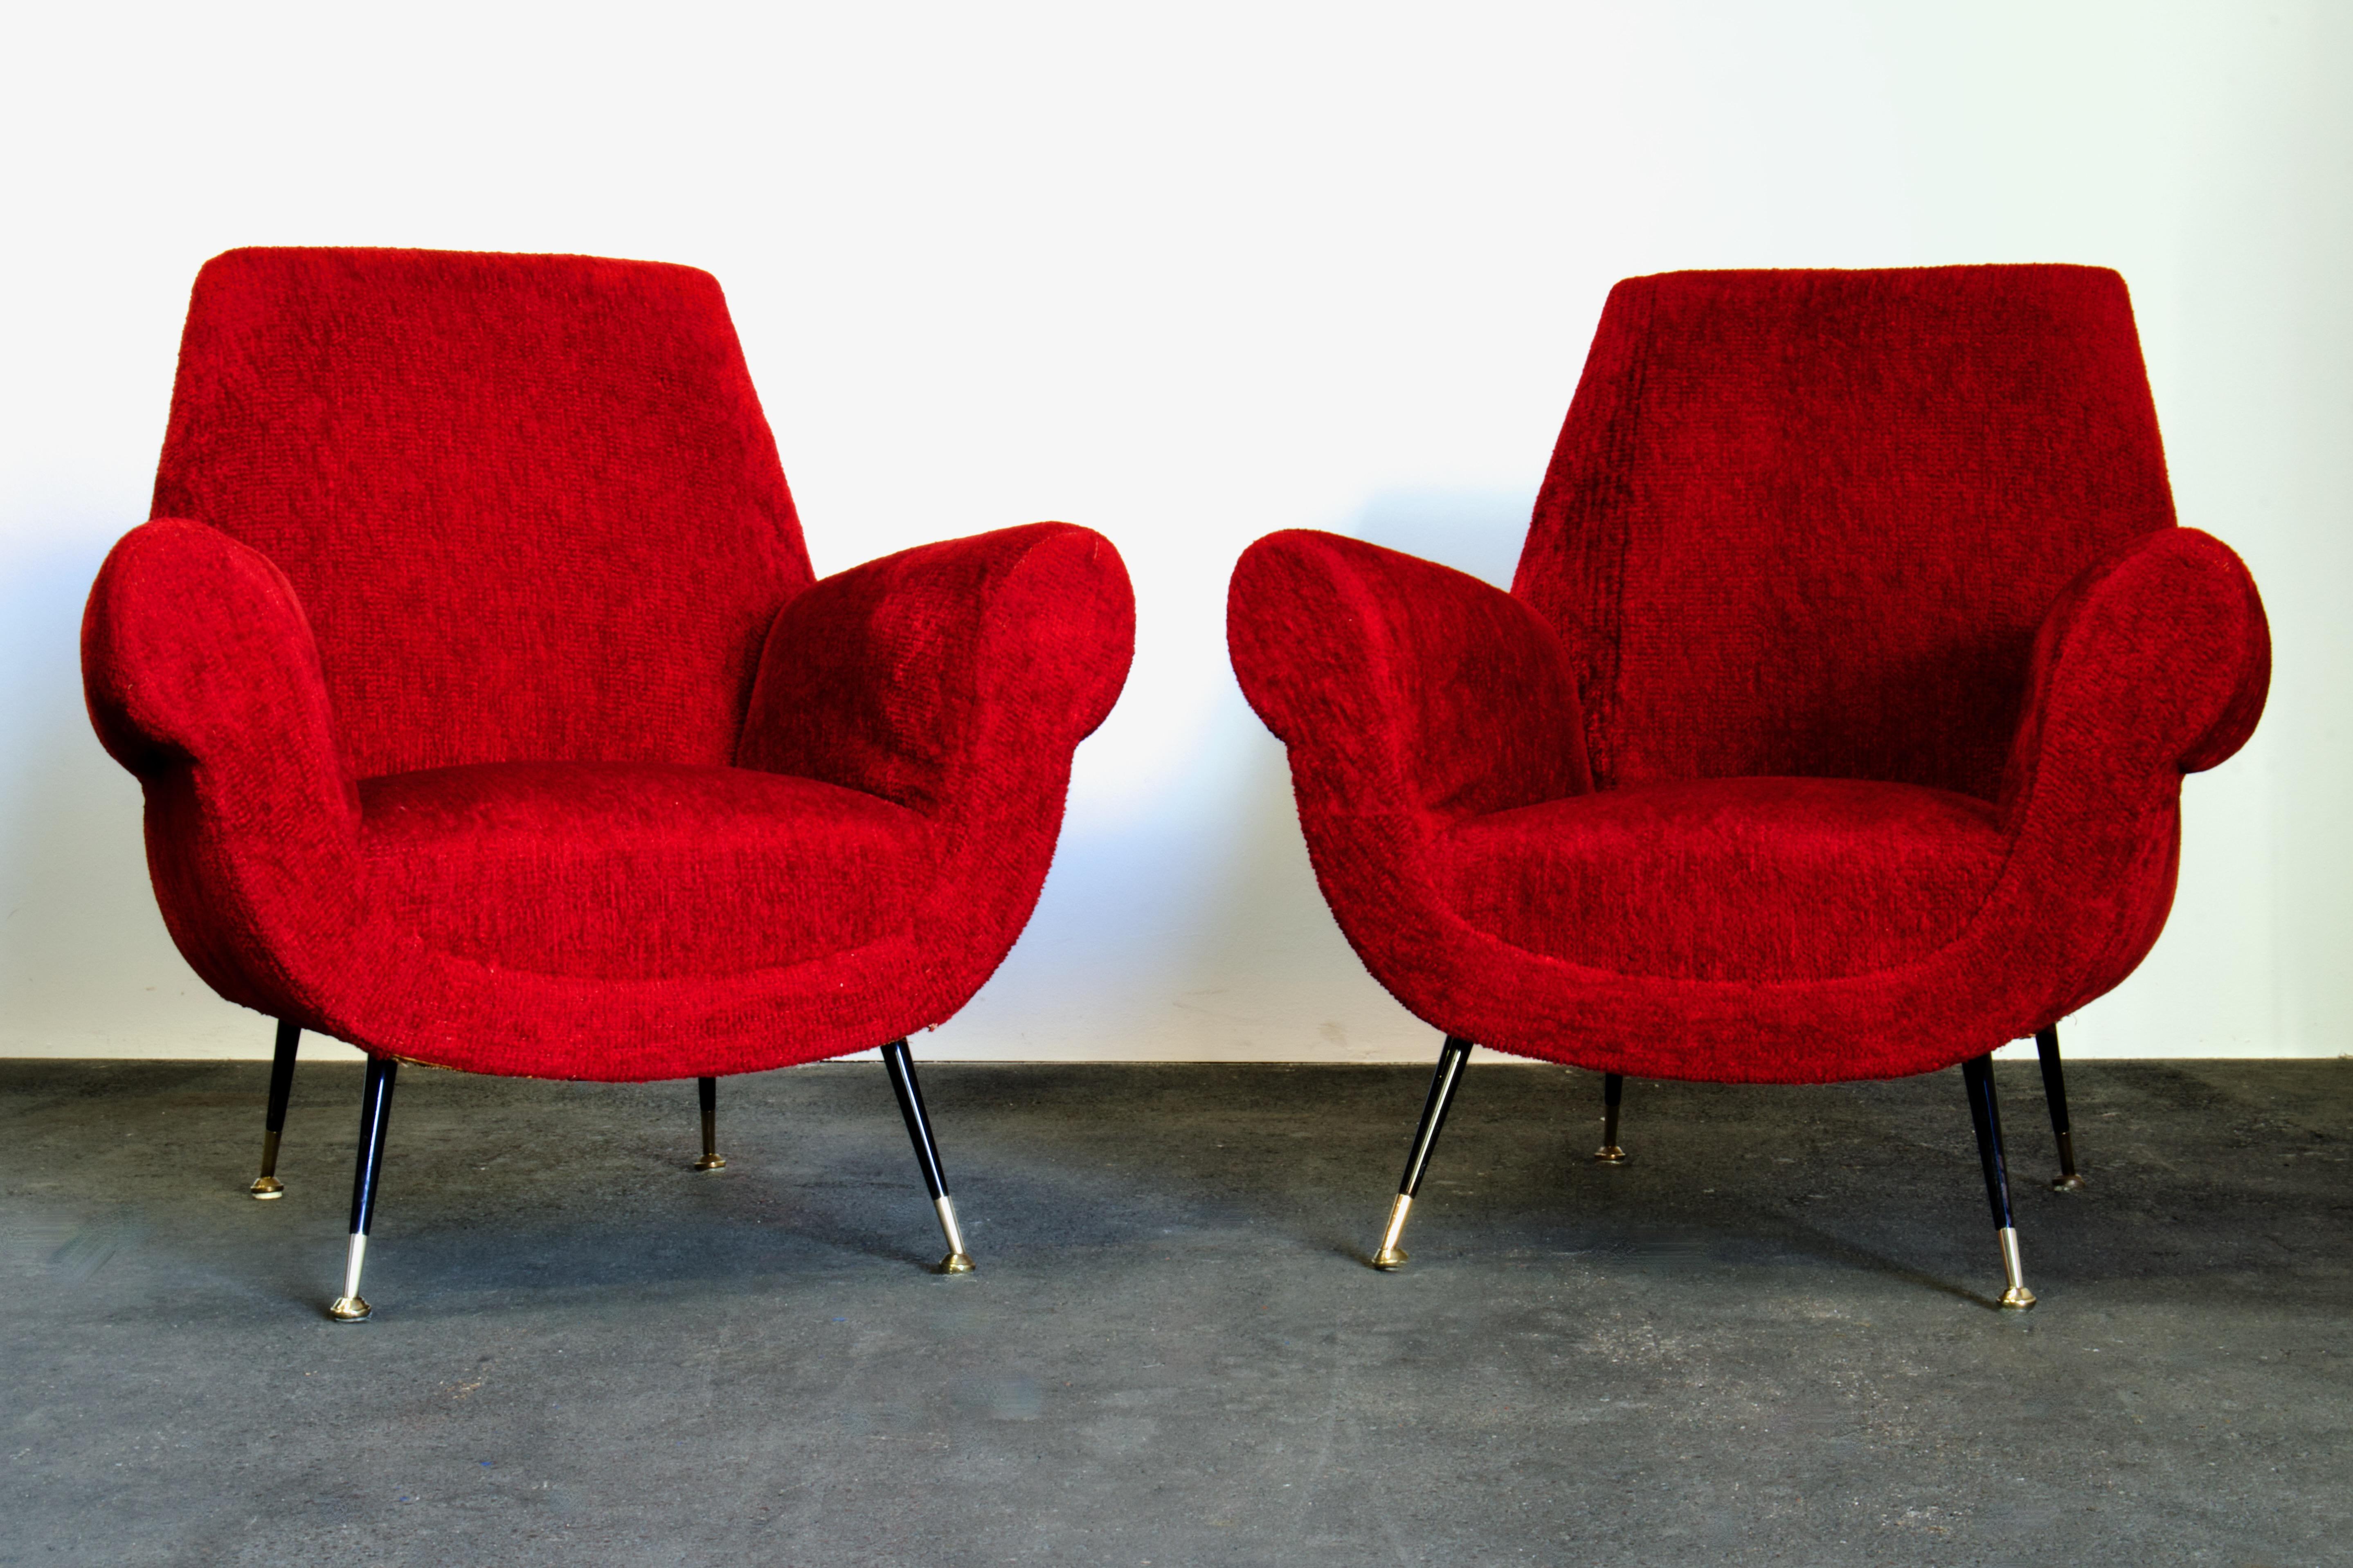 Zwei originale italienische Sessel aus der Jahrhundertmitte, entworfen von Luigi (Gigi) Radice für Minotti, Italien in den 1950er Jahren. Dieser Entwurf, der eine wichtige Periode des italienischen Designs prägte, erinnert an die zeitgenössischen